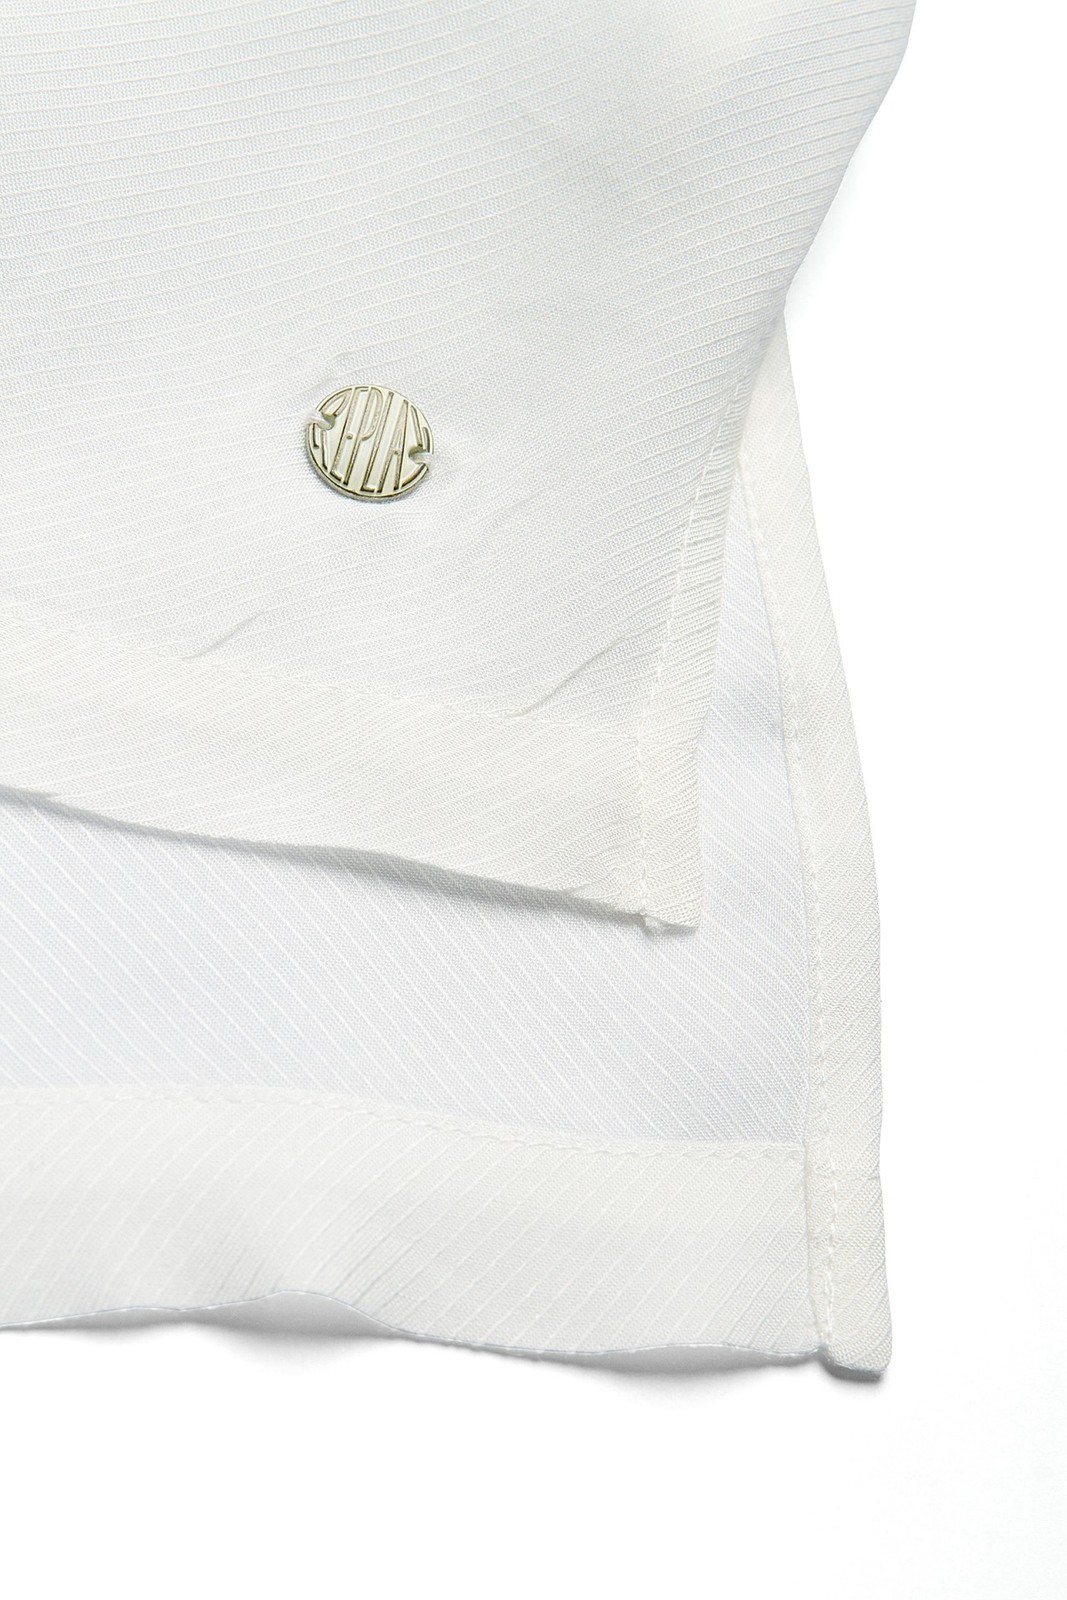 Replay ujjatlan viszkóz műselyem ing oldalhasítékkal, aszimmetrikus szegéllyek 2014.5.14 #51930 fotója